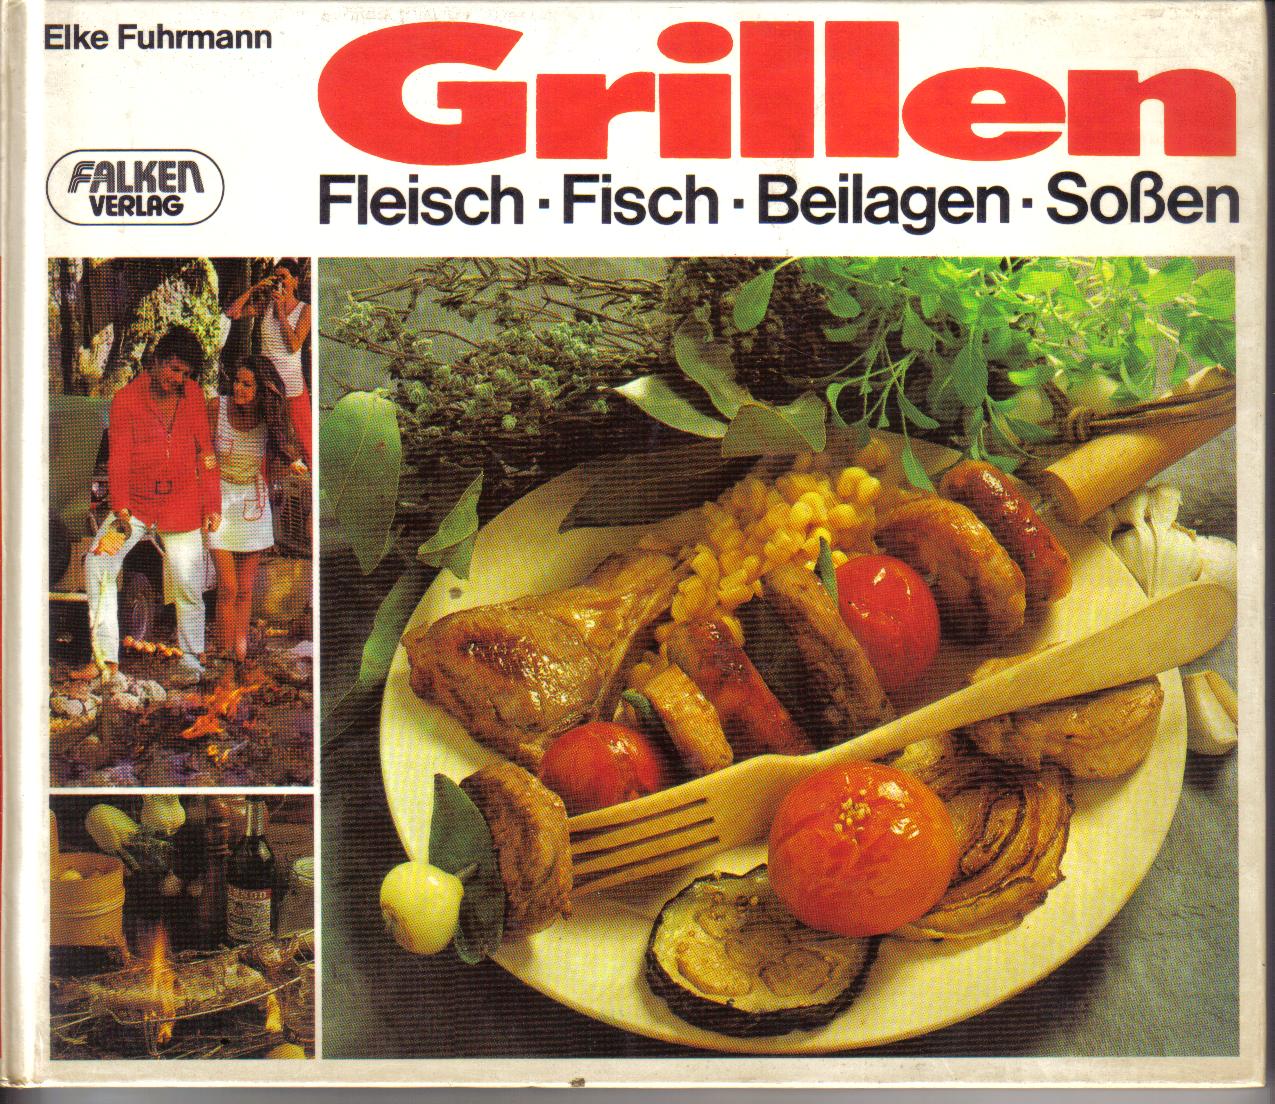 GrillenFleisch-Fisch-Beilagen-SossenElke Fuhrmann